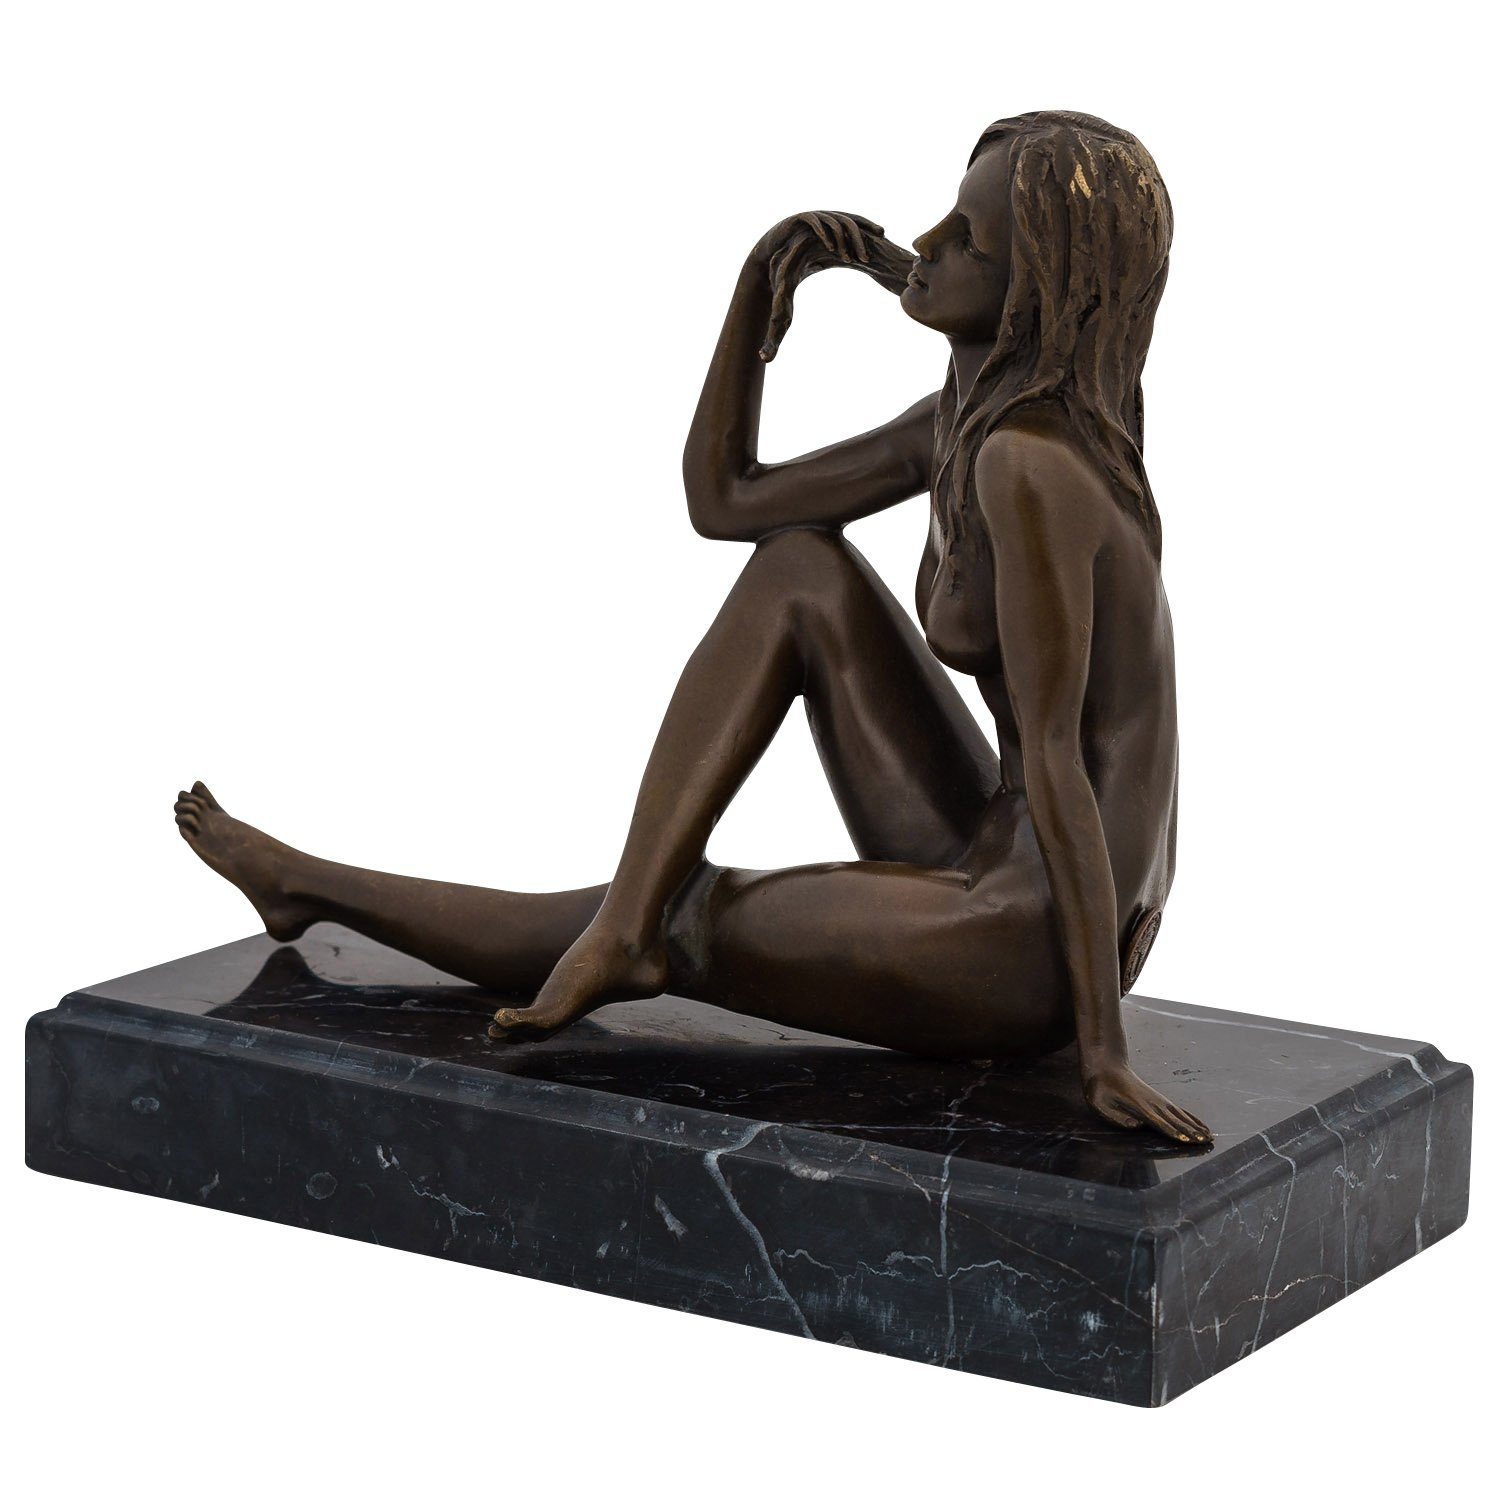 Frau Antik-Stil Bronzefigur Figur Bronze Aubaho Skulptur Akt sculpture Erotik Bronzeskulptur